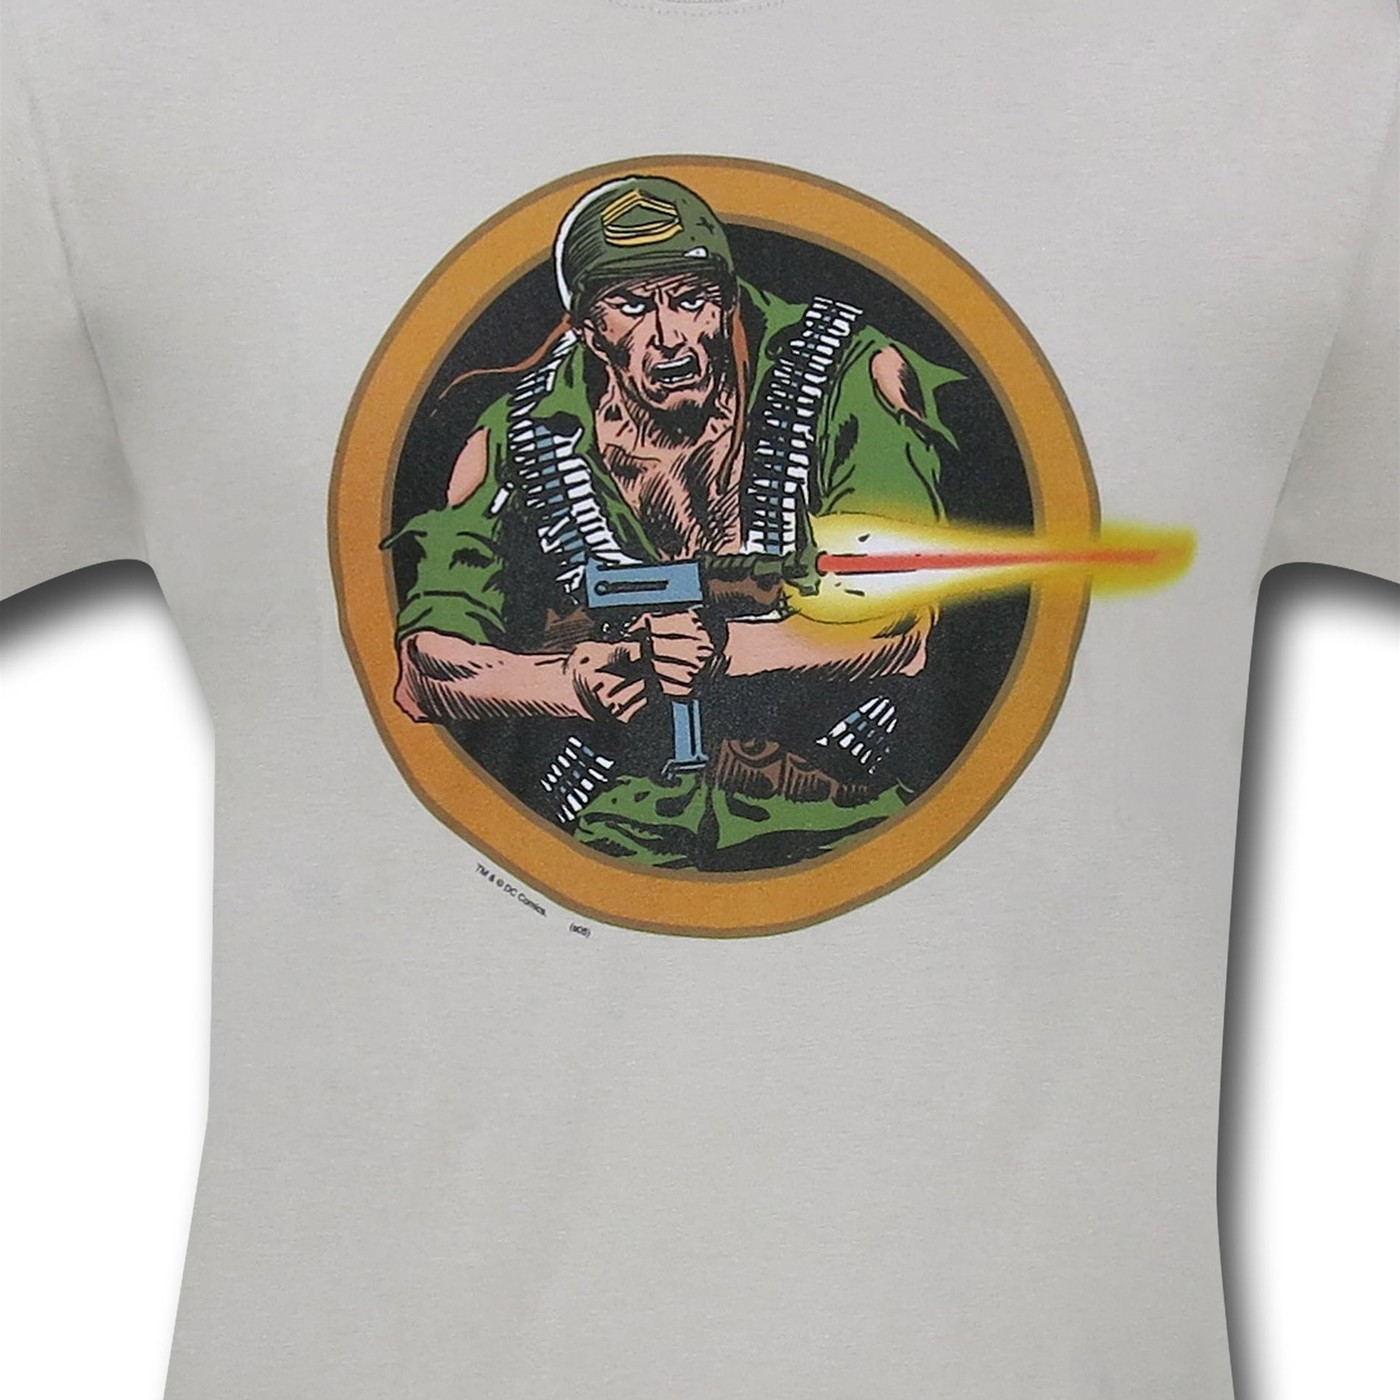 Sgt Rock Attack T-Shirt by Joe Kubert